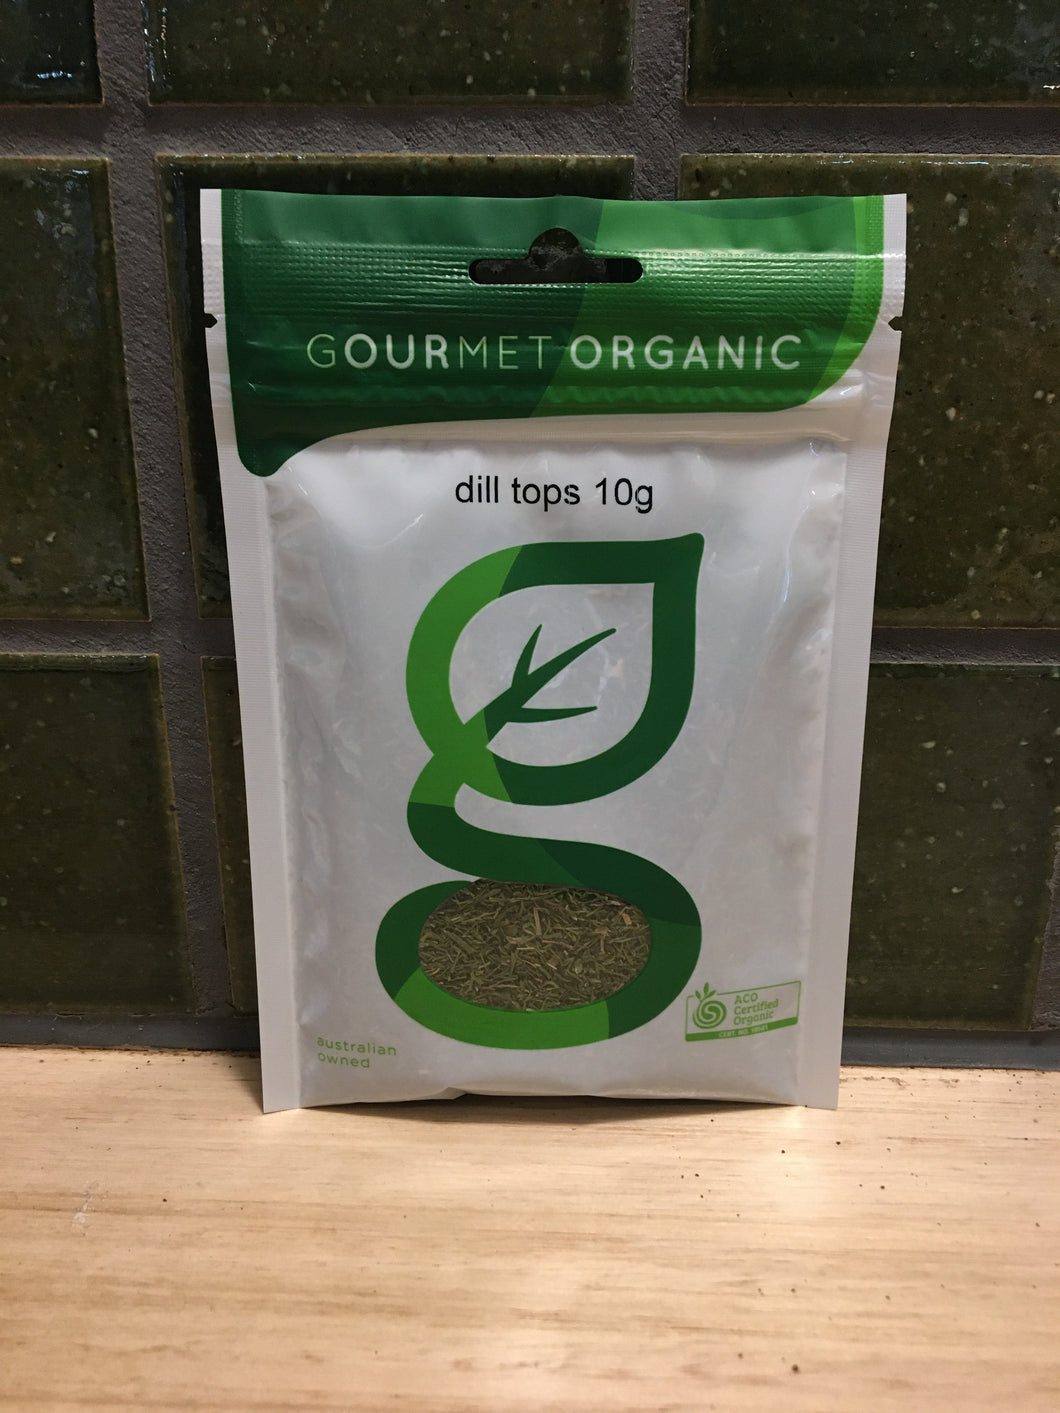 Gourmet Organic Herbs Dill Tops 10g